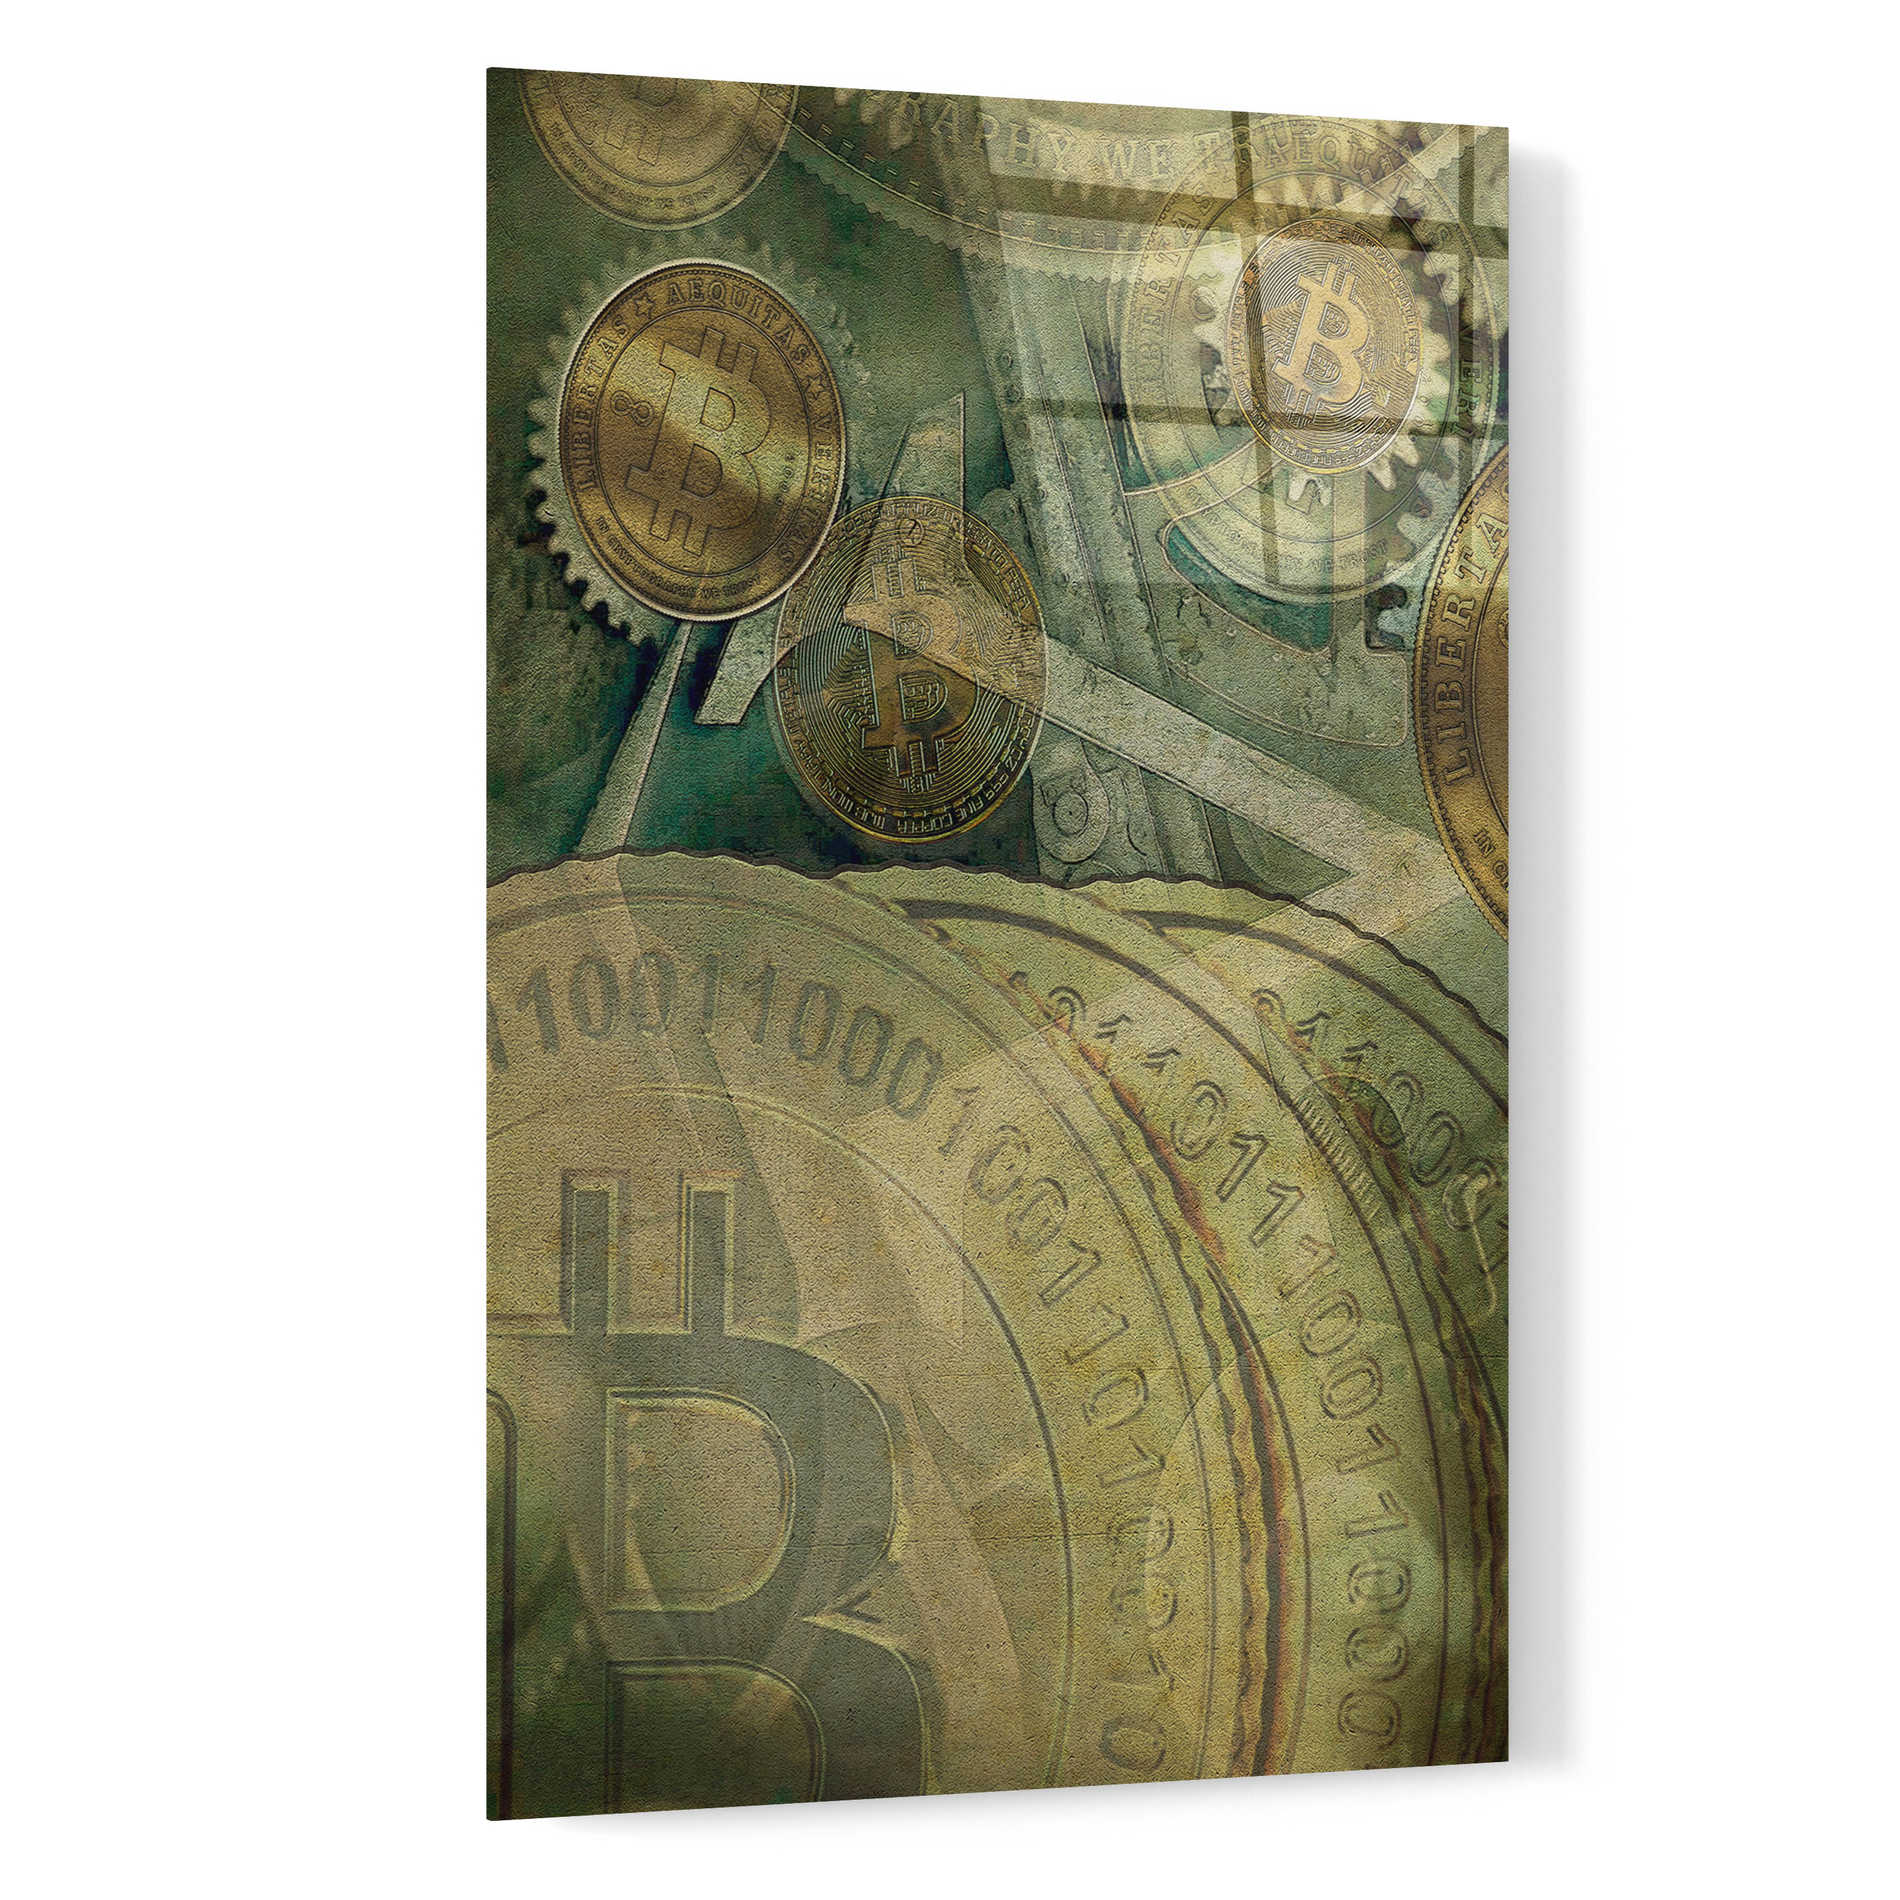 Epic Art 'Grunge Bitcoin Four' by Steve Hunziker, Acrlic Glass Wall Art,16x24